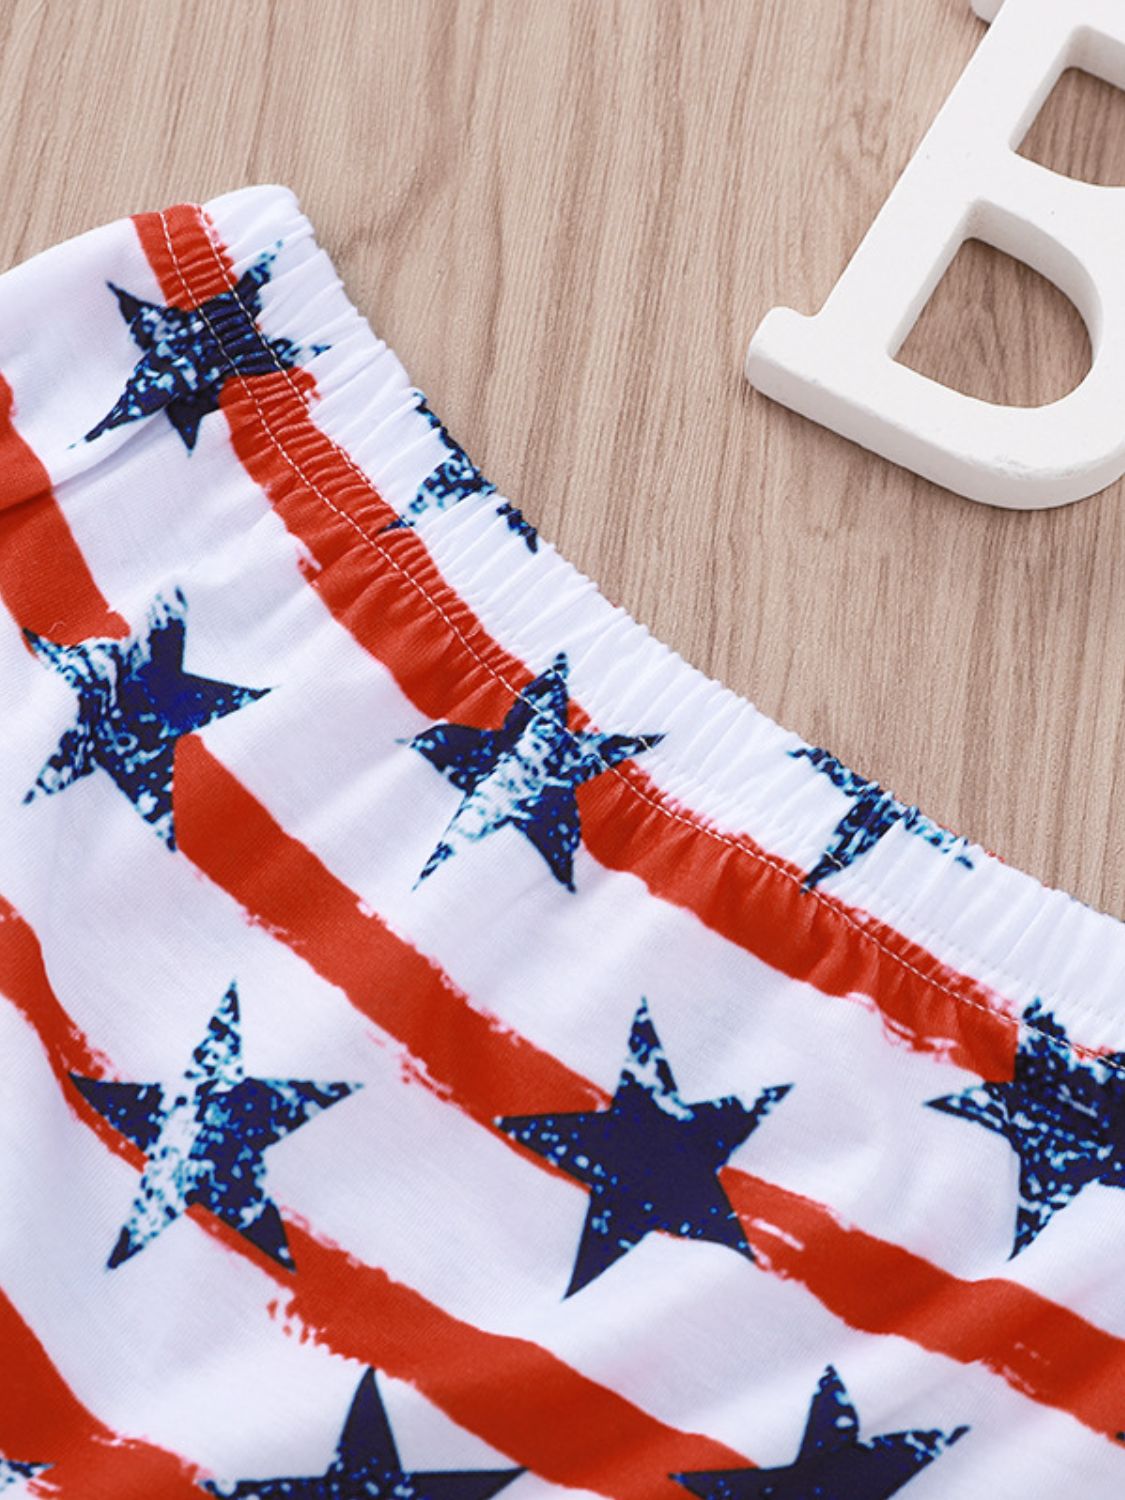 Conjunto de niños sin mangas con estampado gráfico y pantalones cortos con bandera de EE. UU.